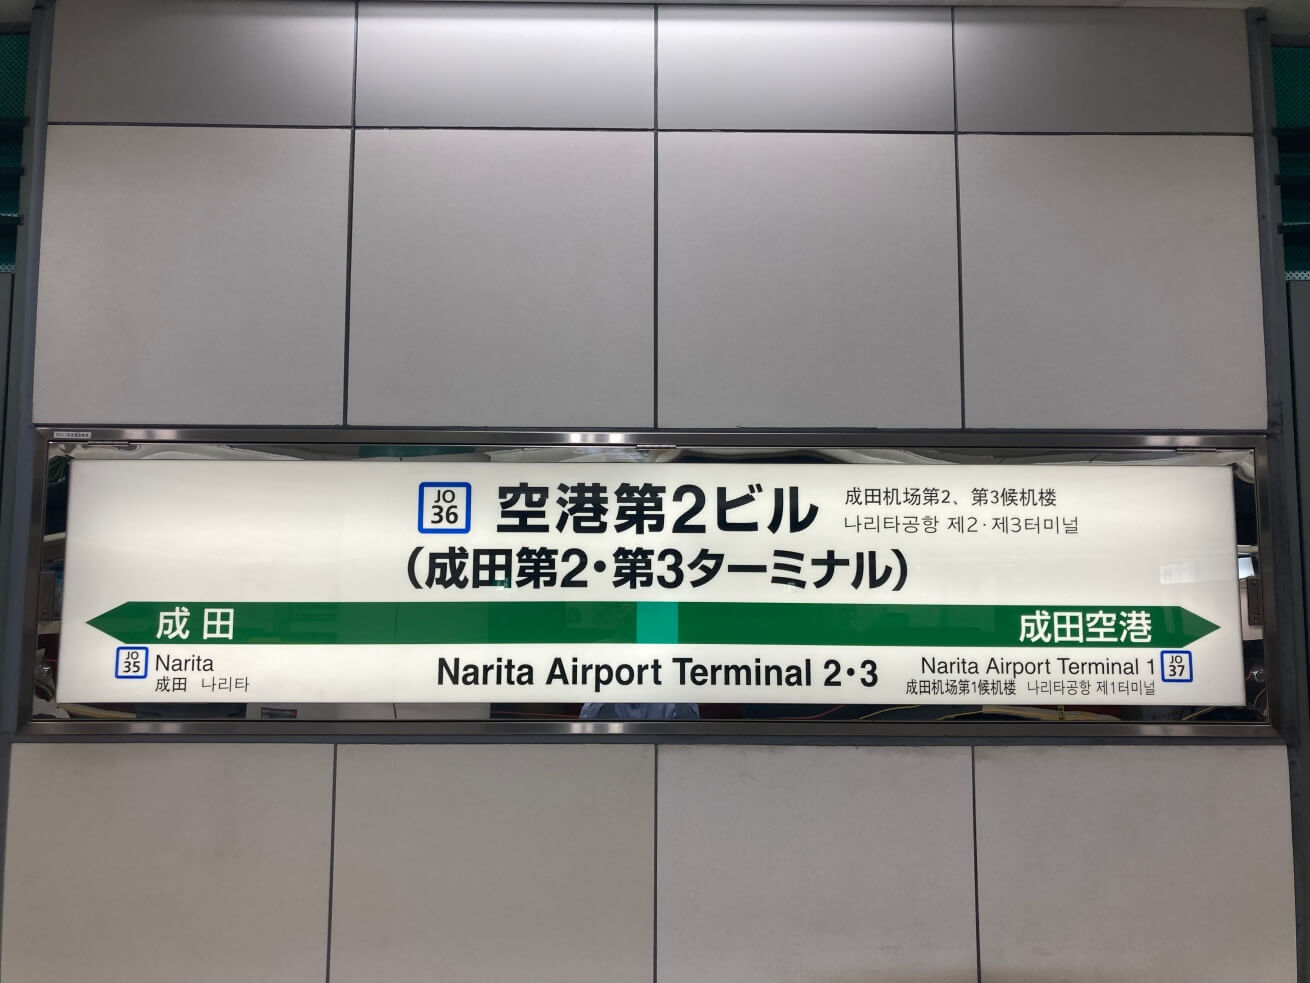 成田空港空港第2ビル駅の電光掲示板